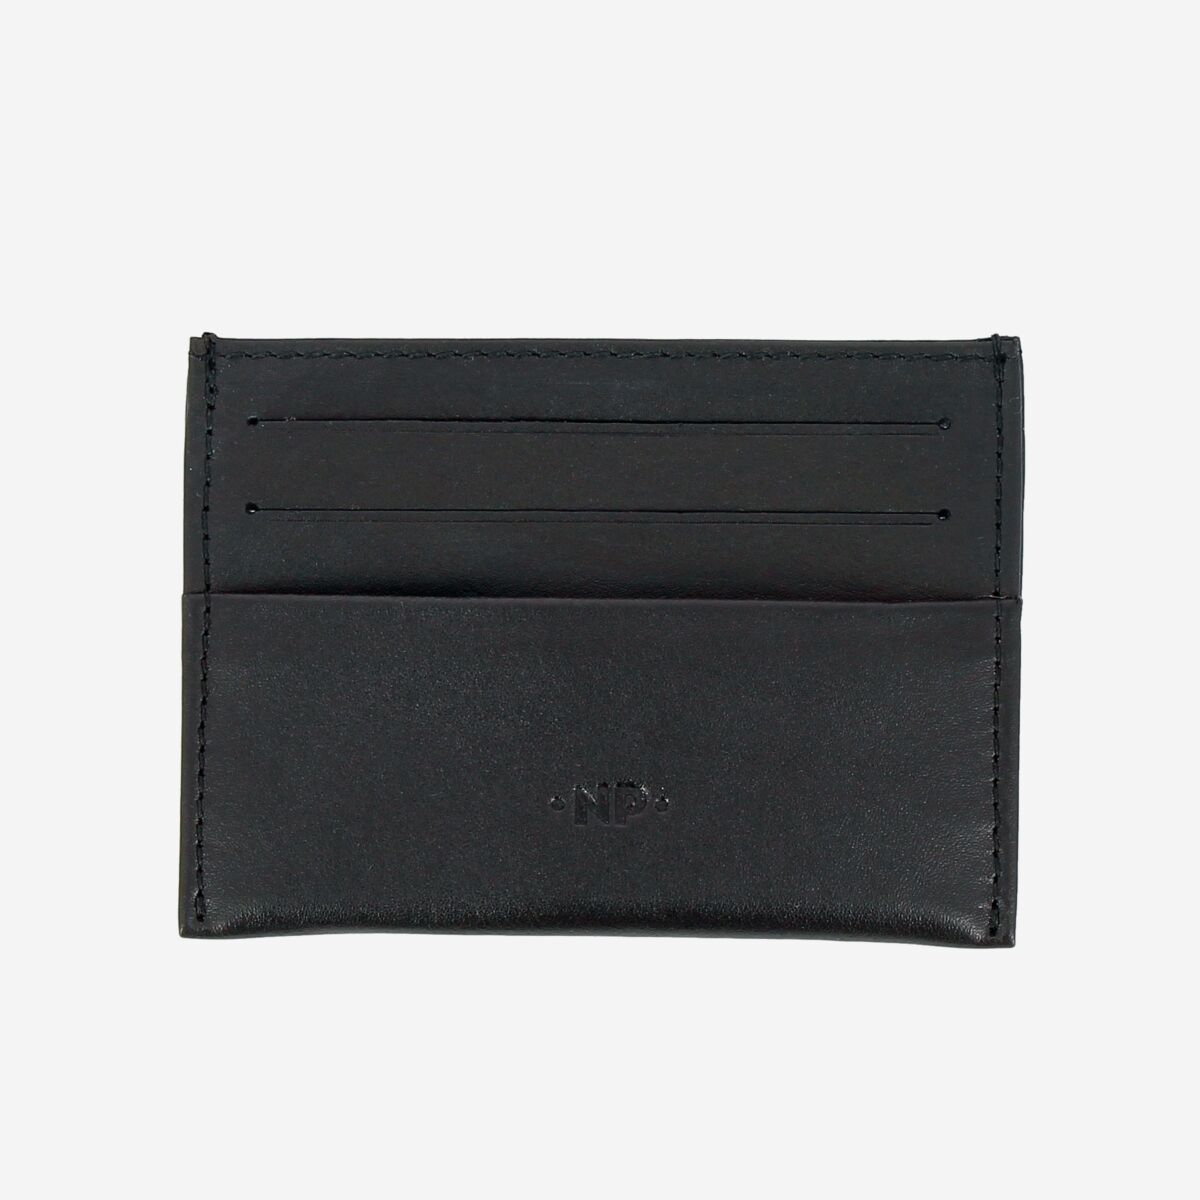 NUVOLA PELLE Minimalist leather credit card wallet - Black